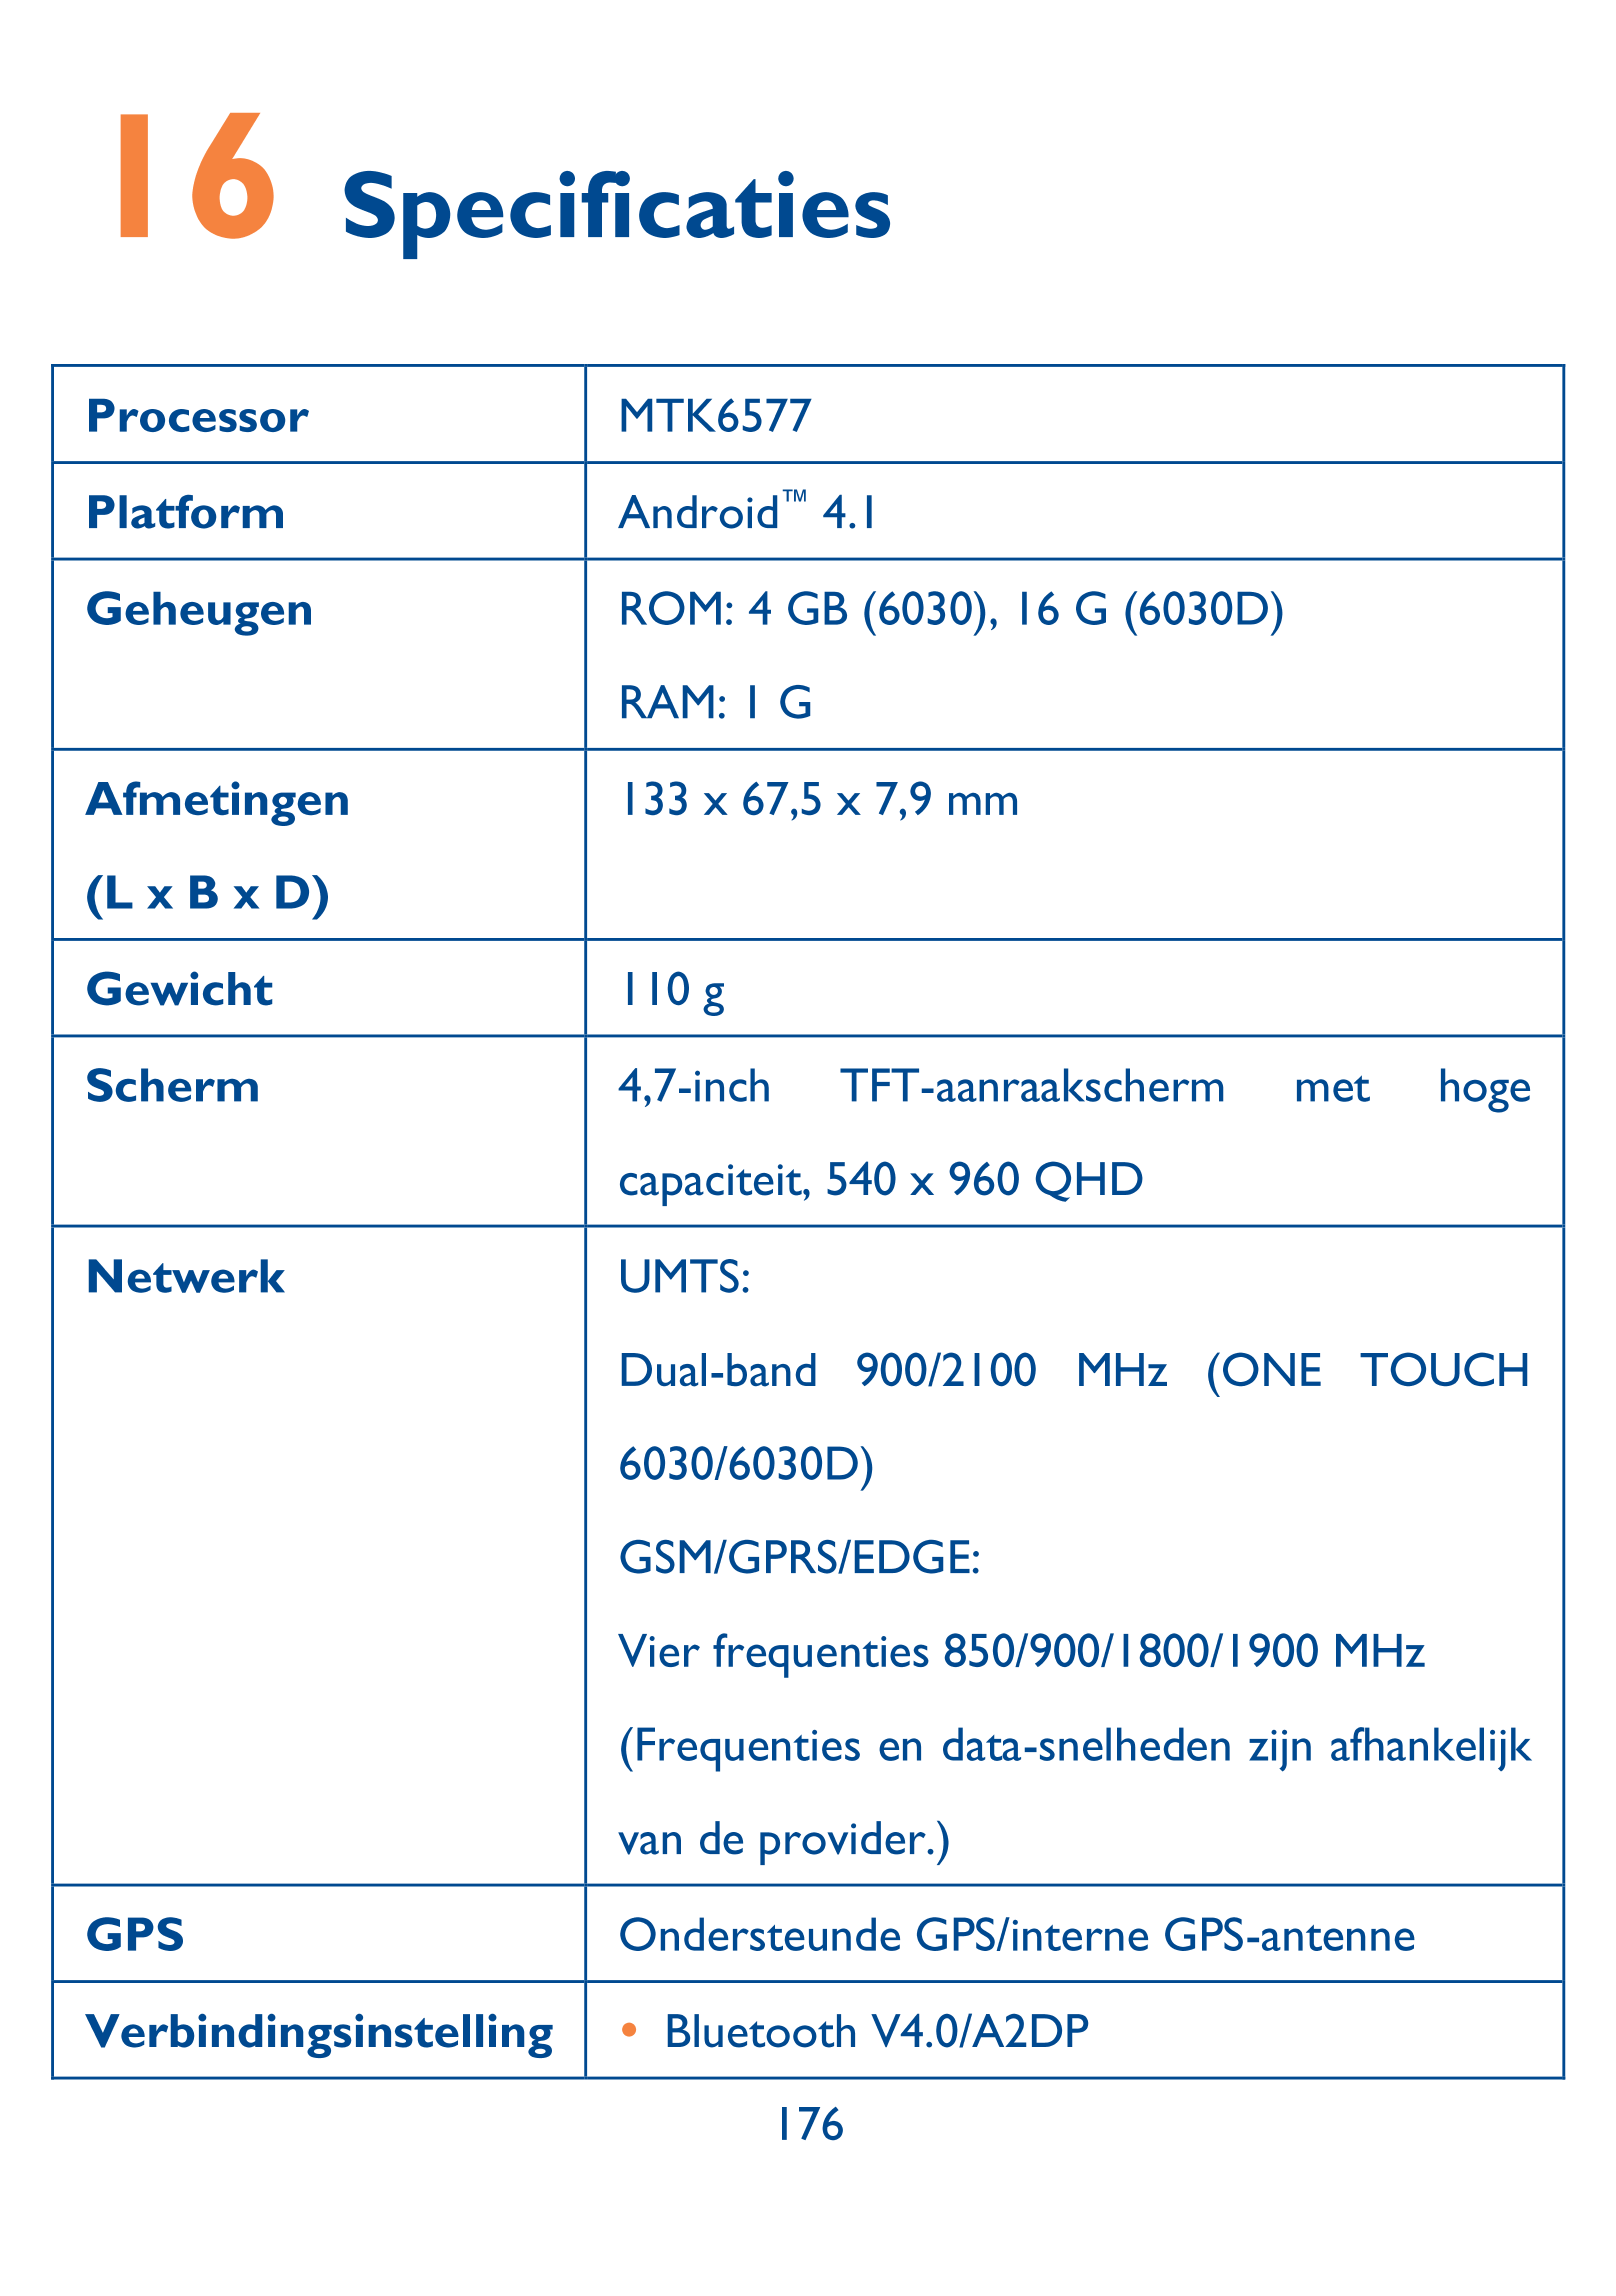 16  Specificaties 
Processor  MTK6577 
Platform  Android™  4.1 
Geheugen  ROM: 4 GB (6030), 16 G (6030D) 
RAM: 1 G 
Afmetingen  